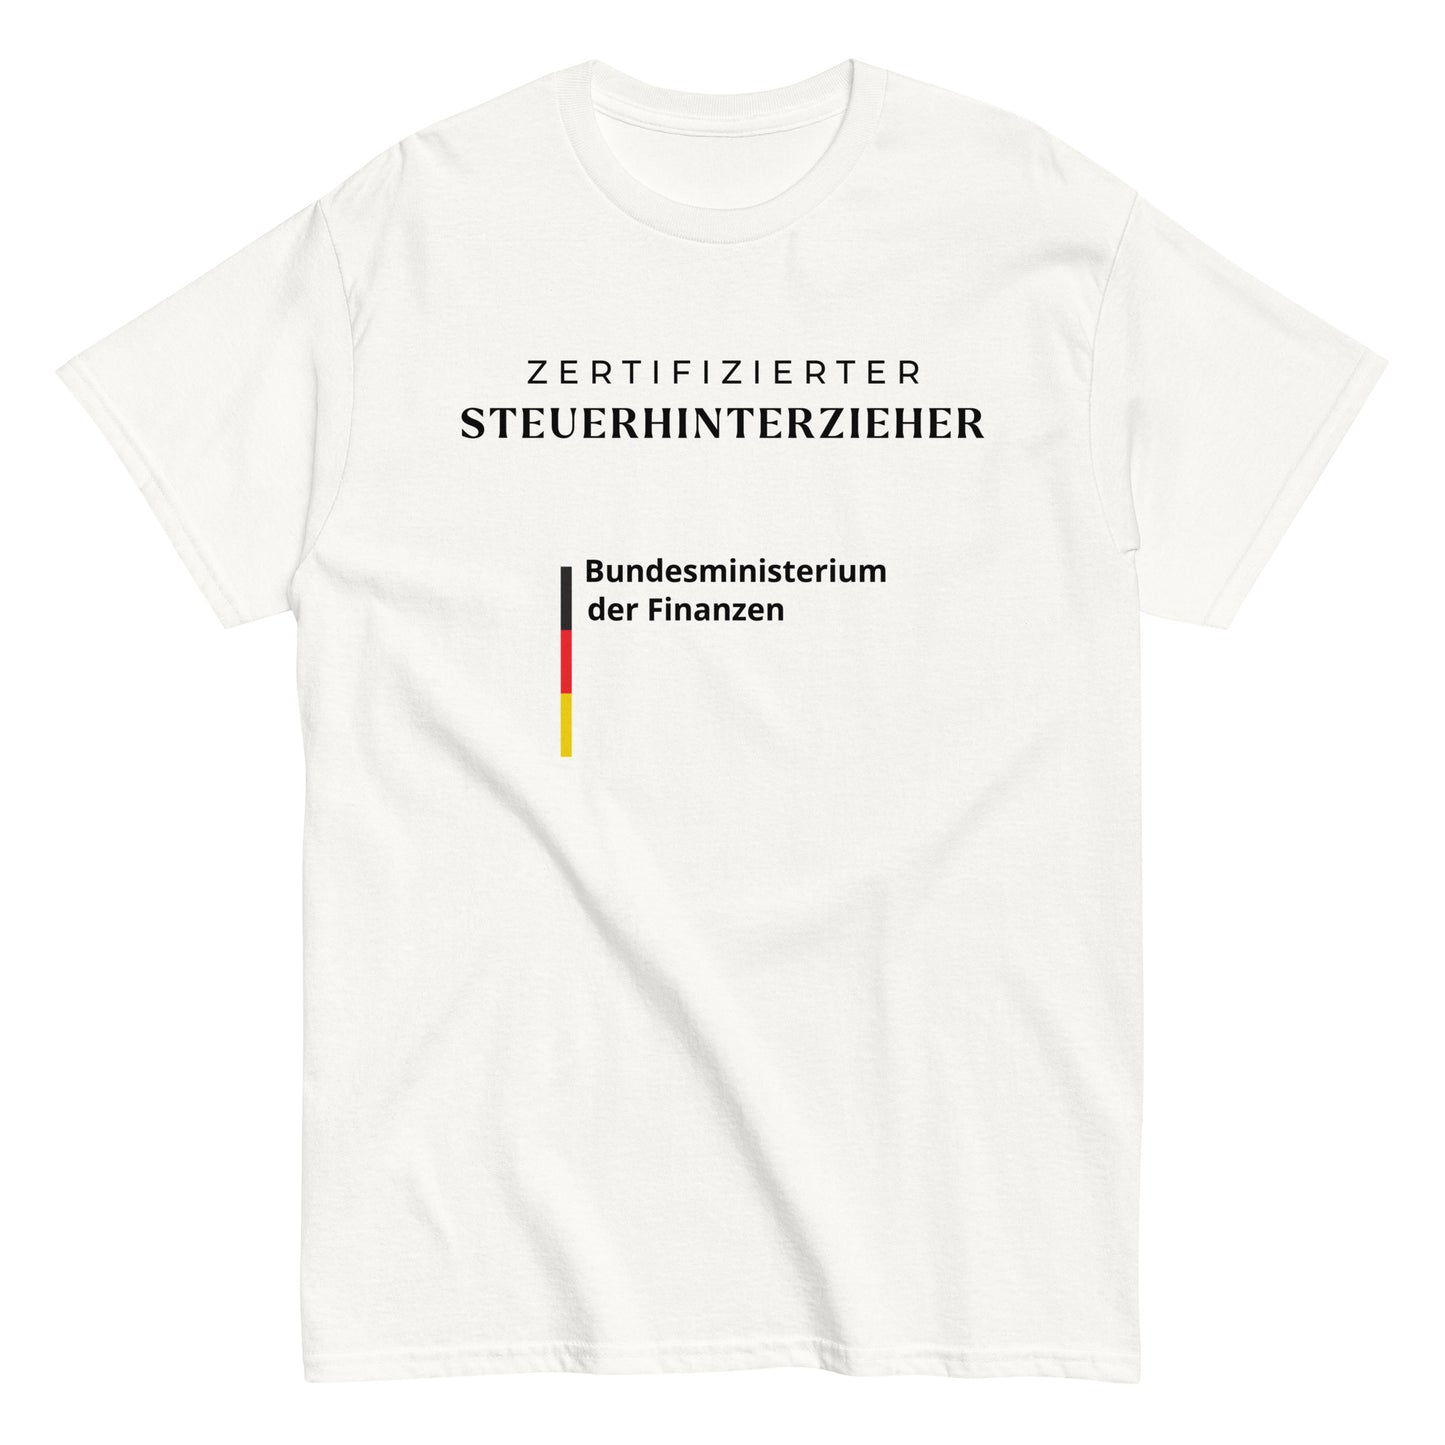 ZERTIFIZIERTER STEUERHINTERZIEHER T-Shirt